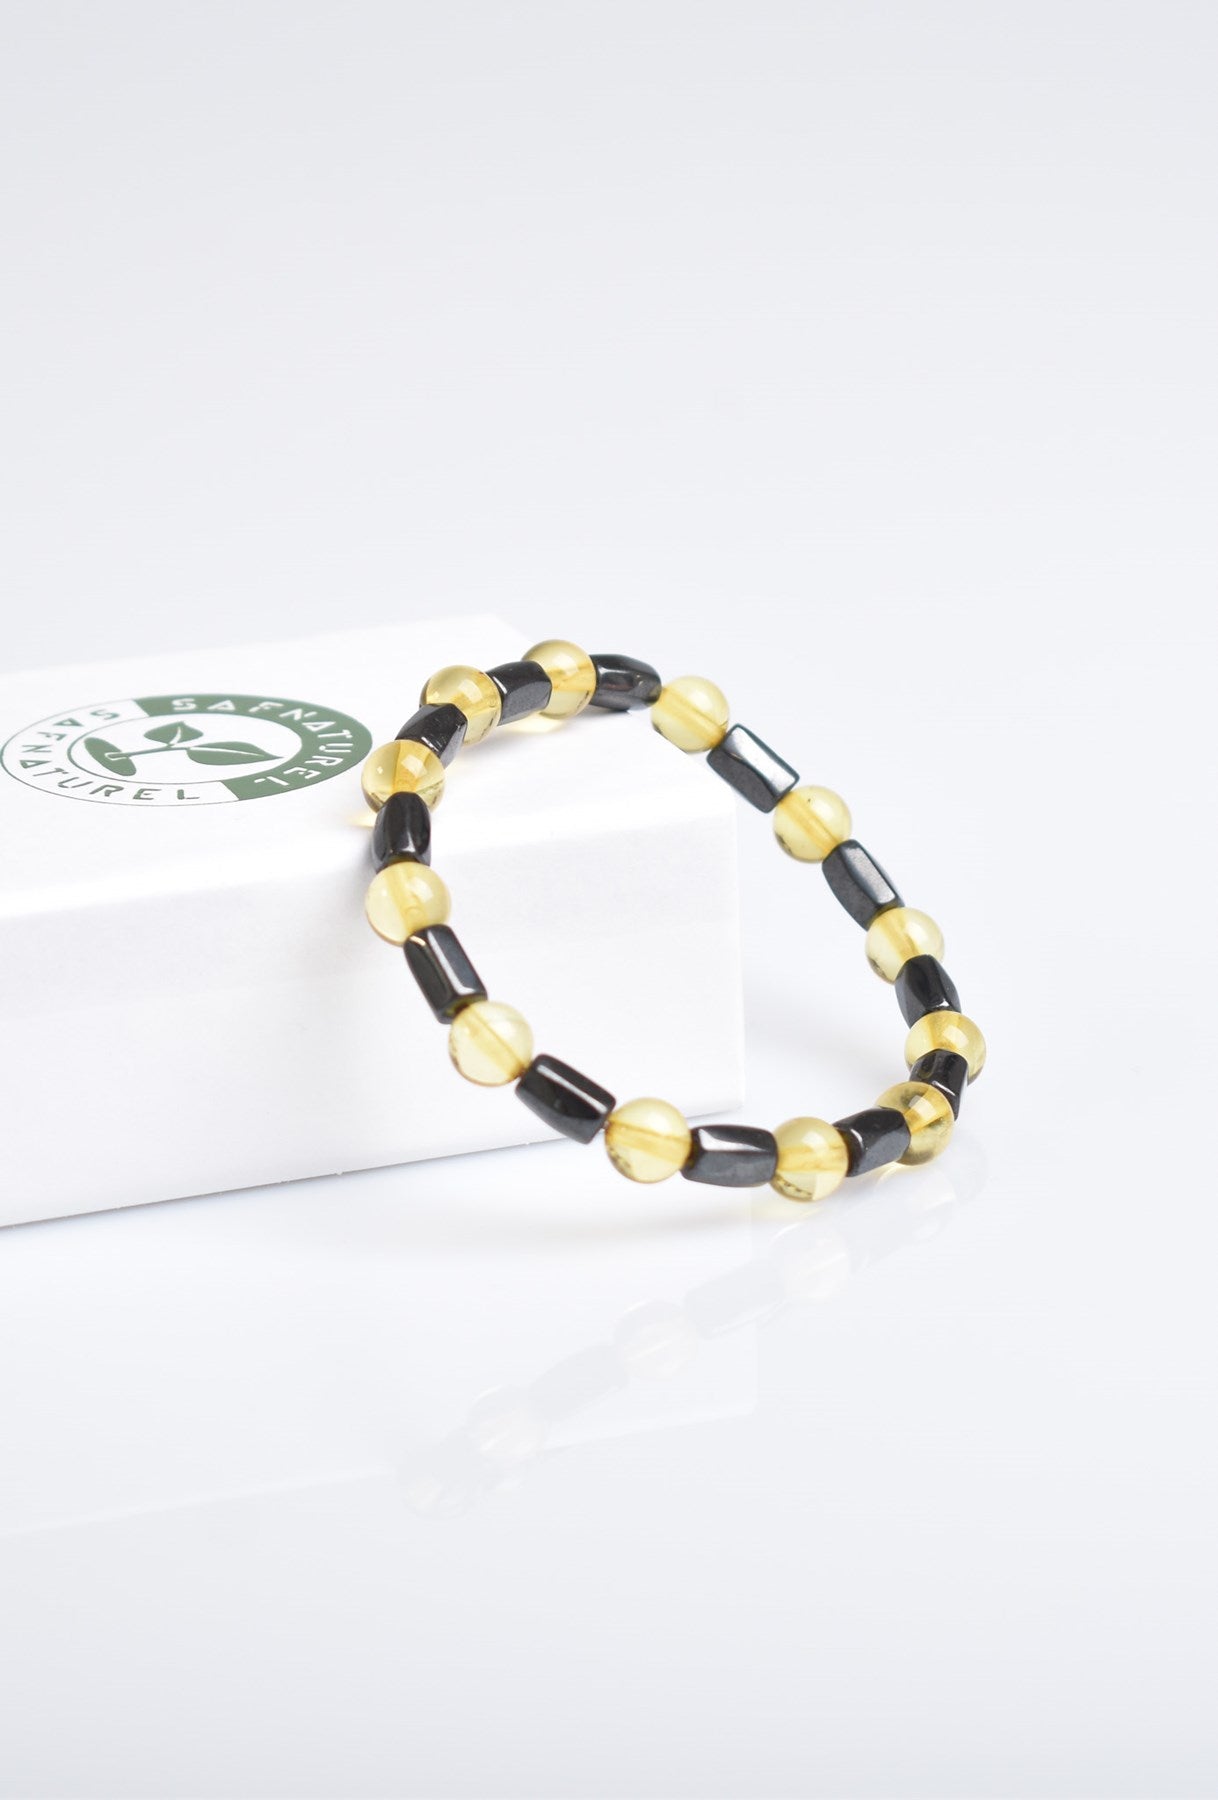 Amber & Hematite Gemstone Macrame Bracelet